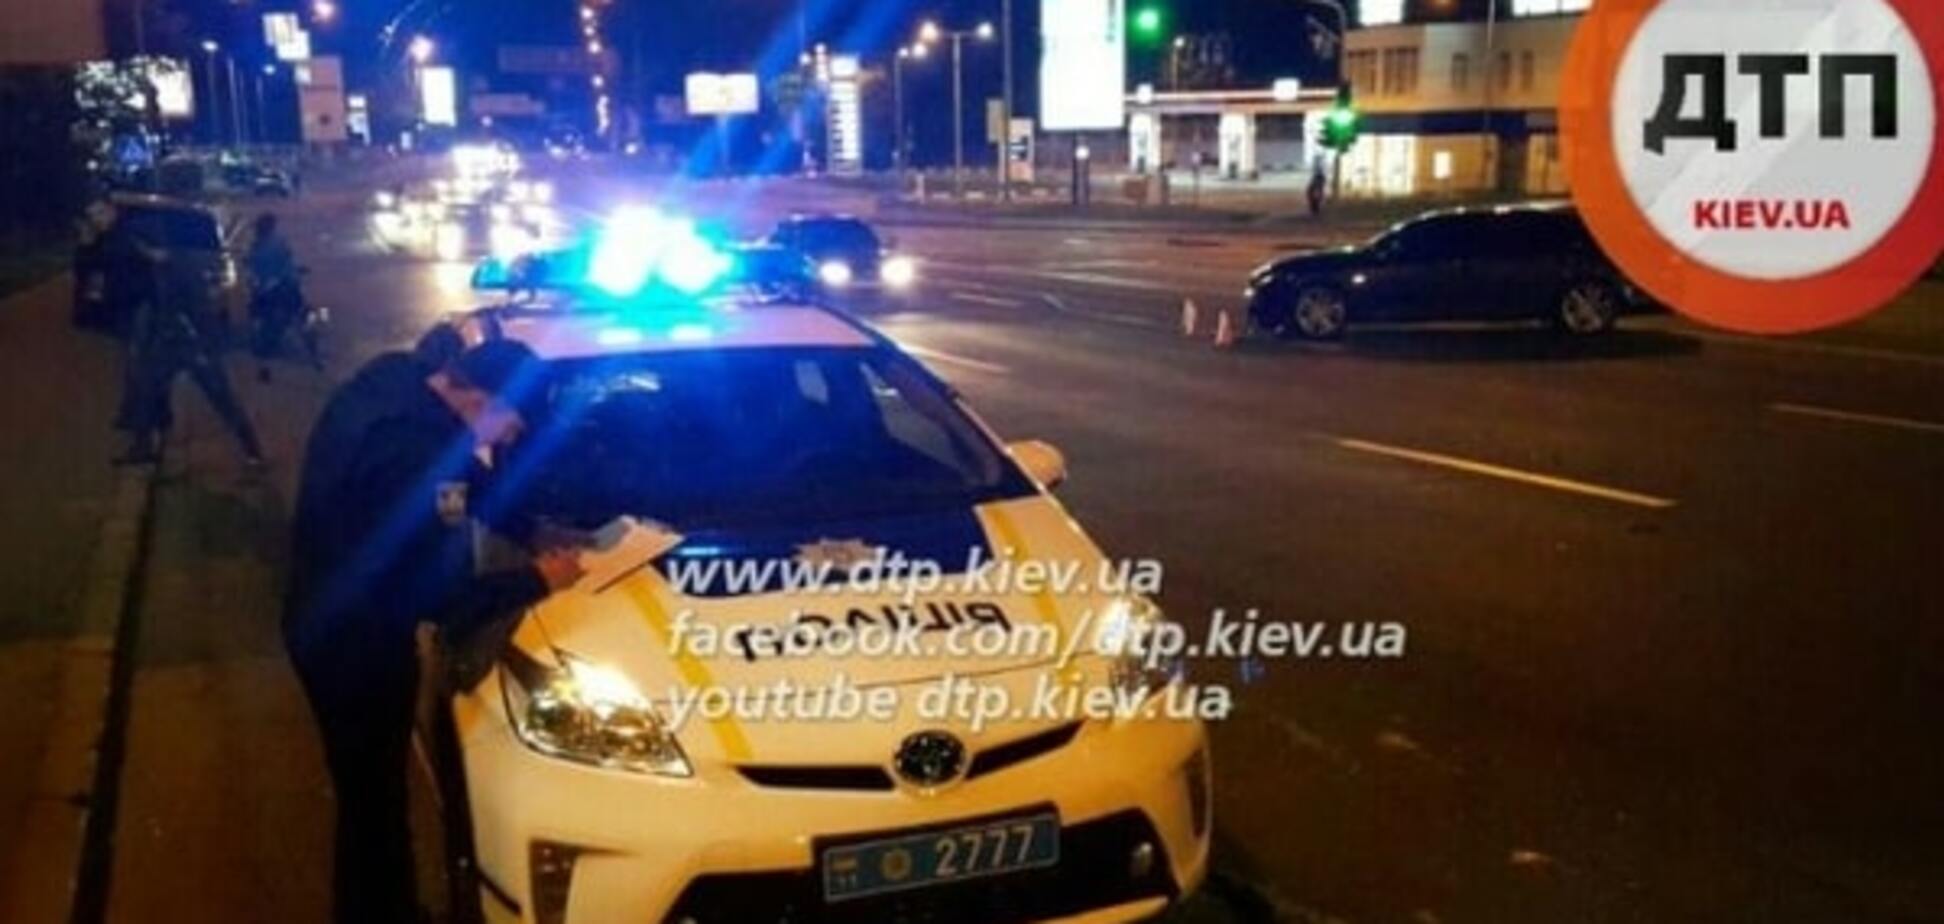 'Чудом обошлось': в Киеве Lexus и мотоцикл попали в ДТП, совершив двойное нарушение. Фото с места аварии